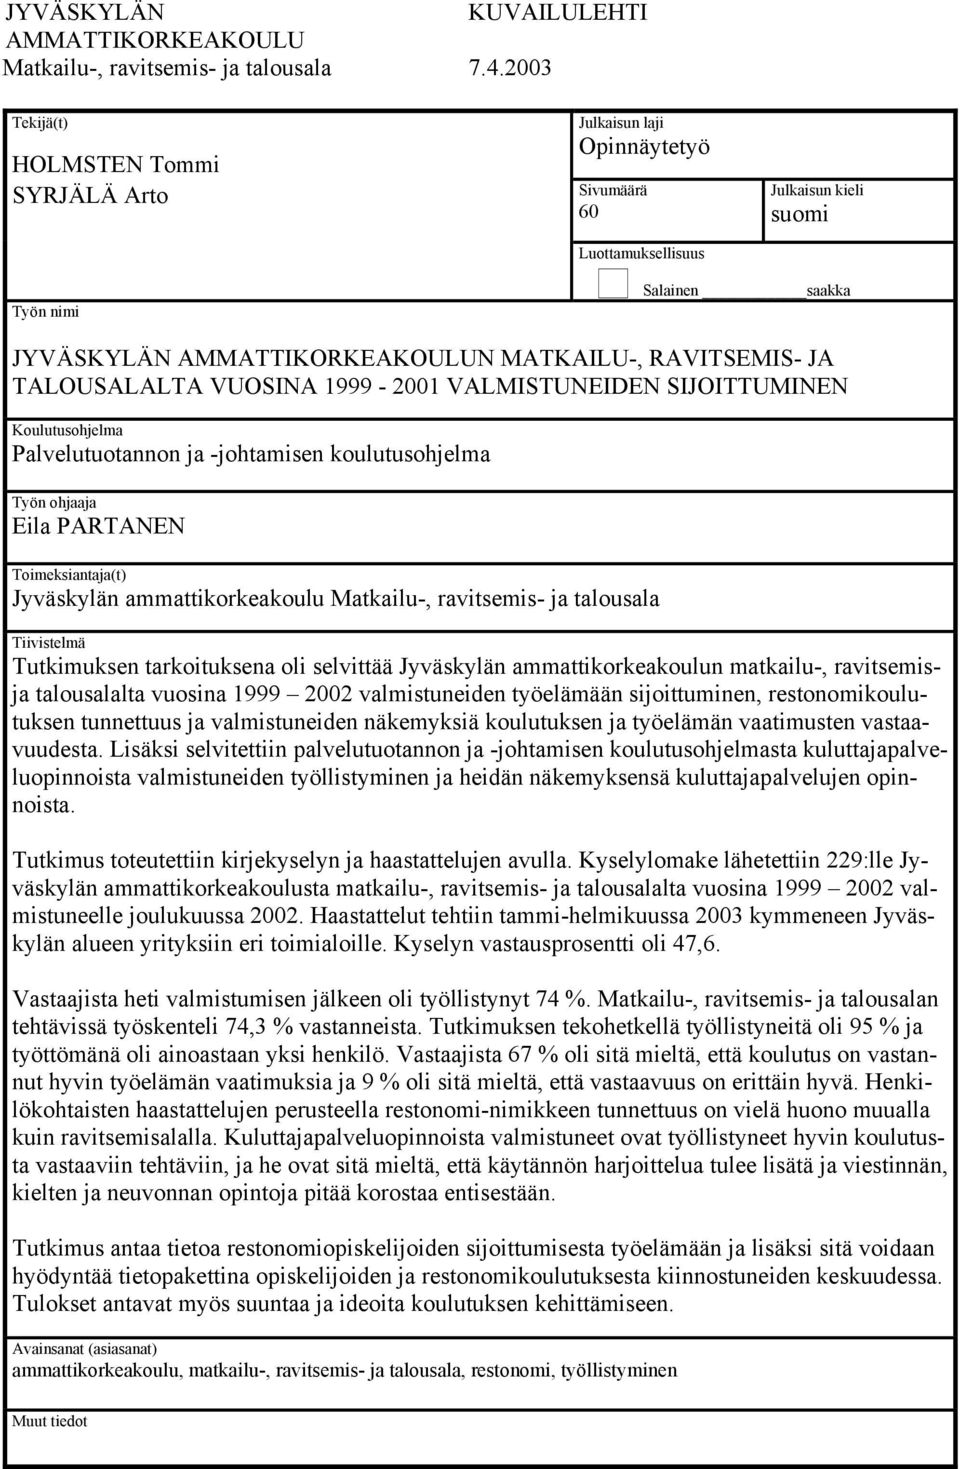 RAVITSEMIS- JA TALOUSALALTA VUOSINA 1999-2001 VALMISTUNEIDEN SIJOITTUMINEN Koulutusohjelma Palvelutuotannon ja -johtamisen koulutusohjelma Työn ohjaaja Eila PARTANEN Toimeksiantaja(t) Jyväskylän